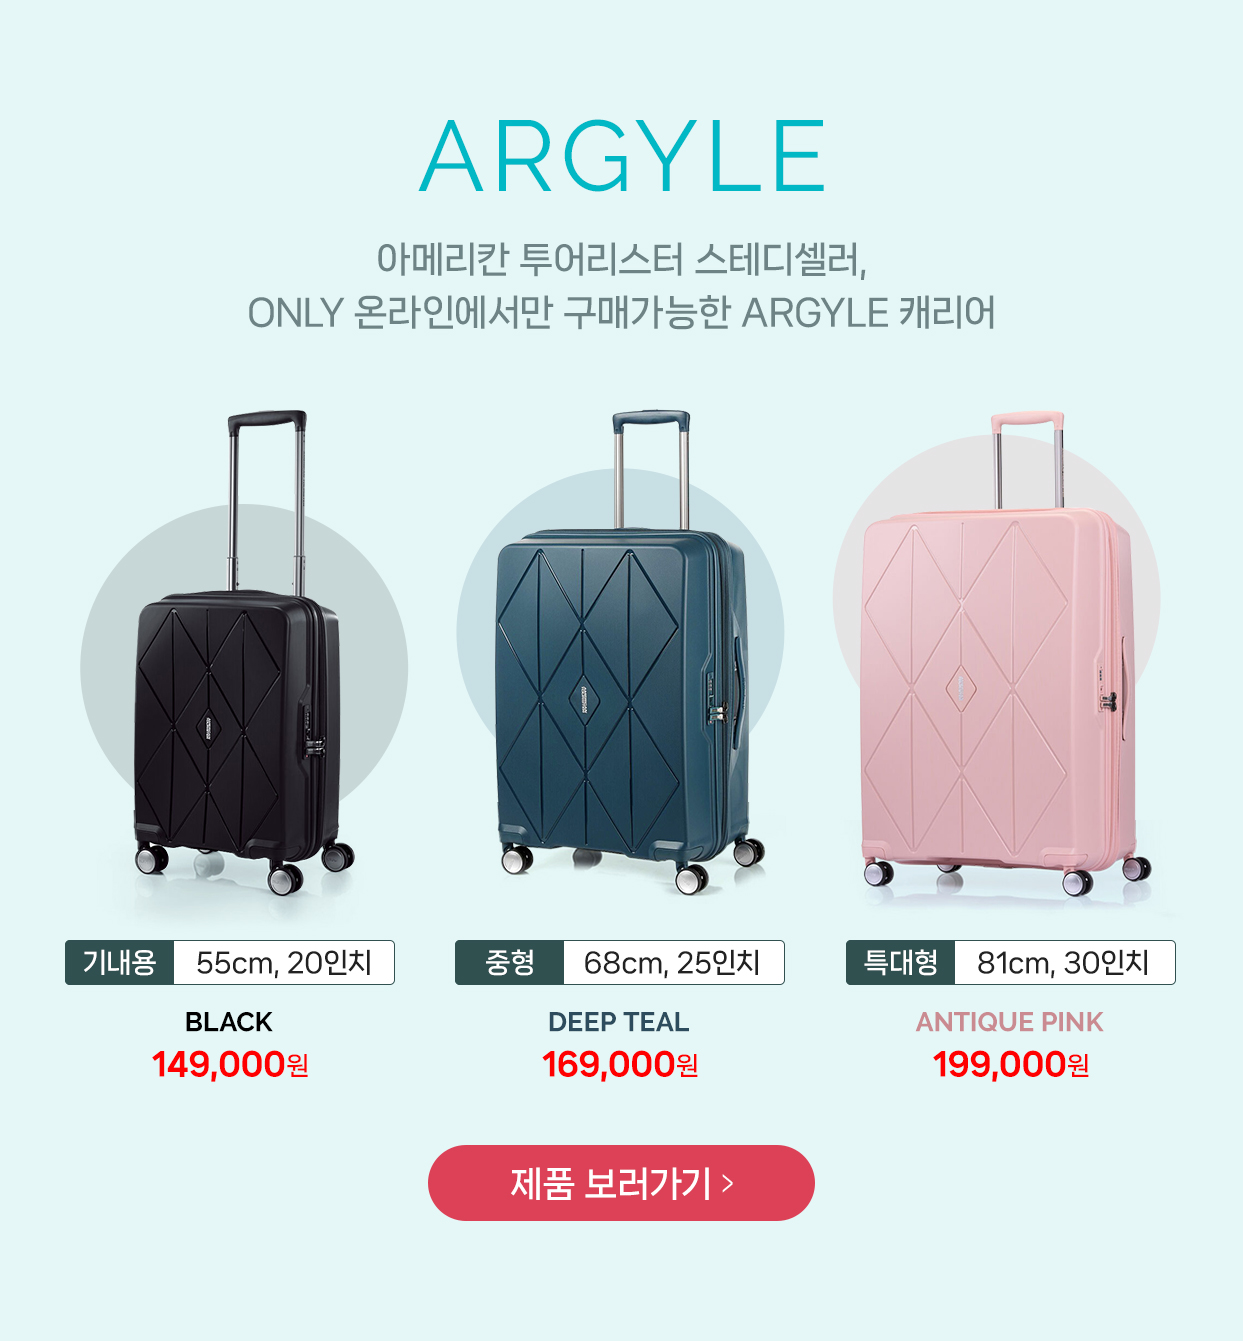 ARGYLE 아메리칸 투어리스터 스테디셀러, ONLY 온라인에서만 구매가능한 ARGYLE 캐리어